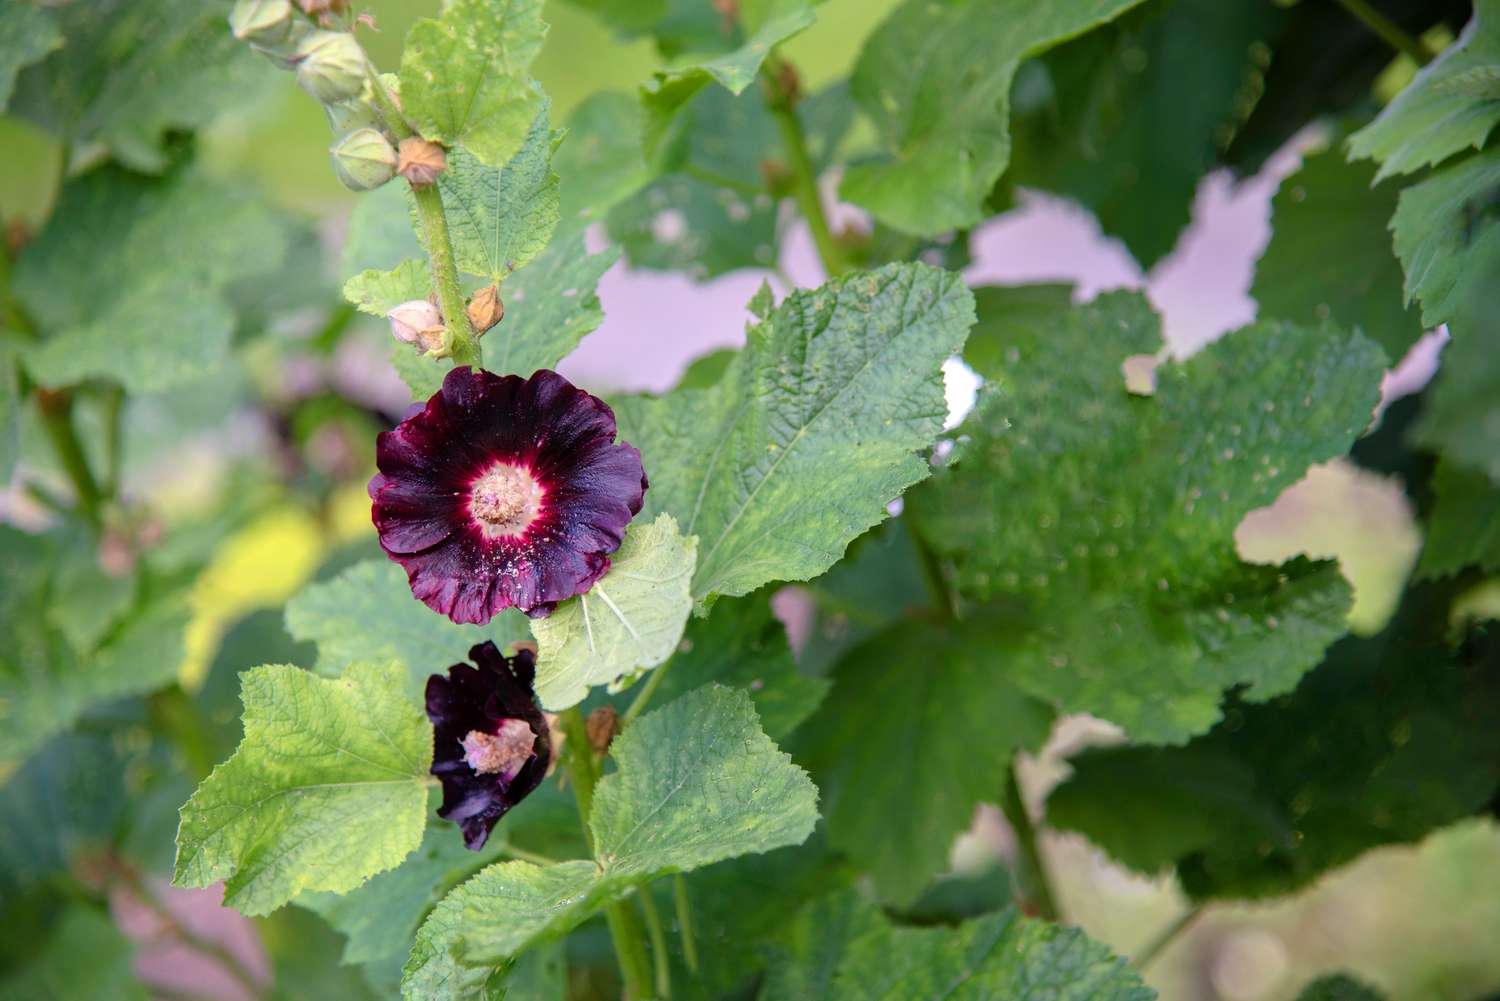 Schwarze Stechapfelpflanze mit tiefvioletten gefüllten Blüten und Knospen auf hohem Stamm, umgeben von großen Blättern